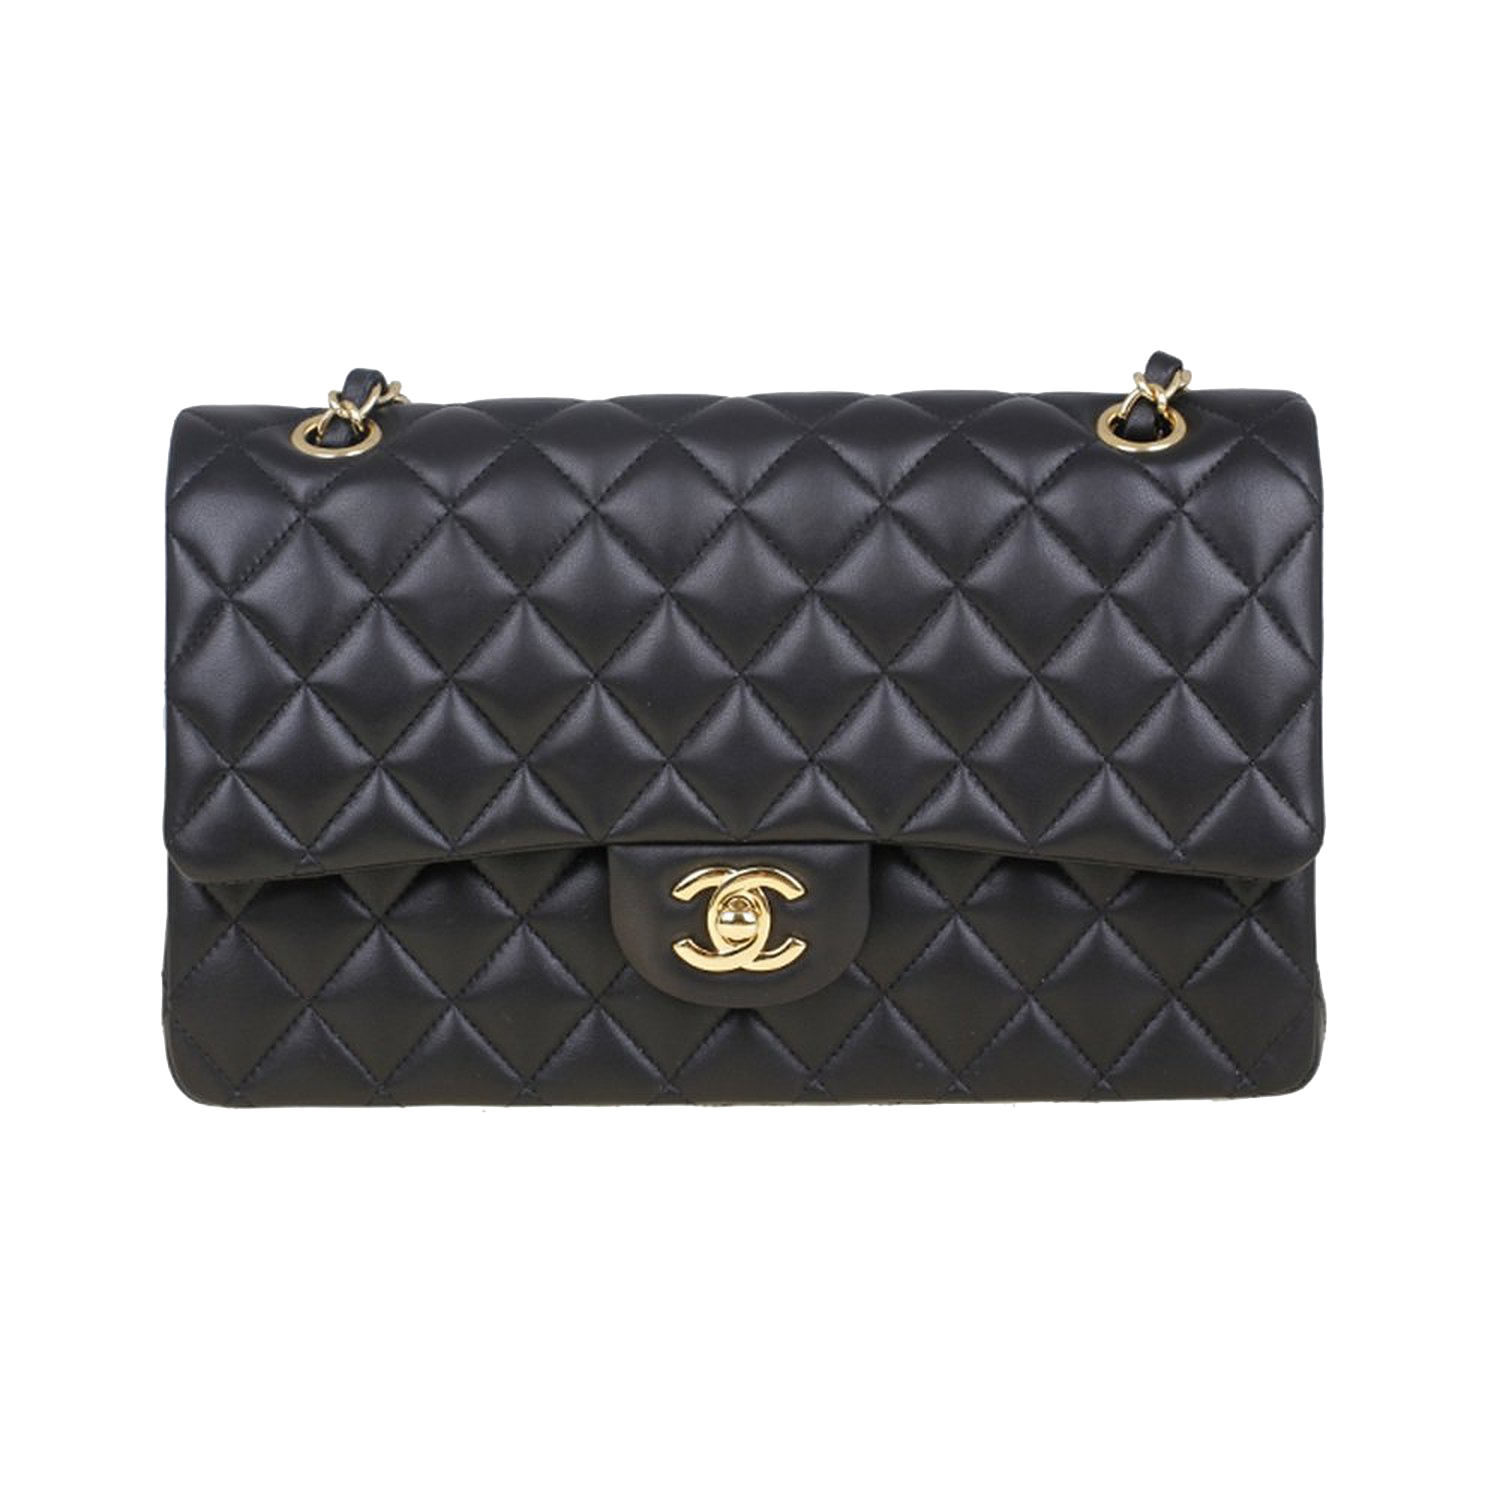 Png Transparent Chanel Bag, Png Download , Transparent Png Image